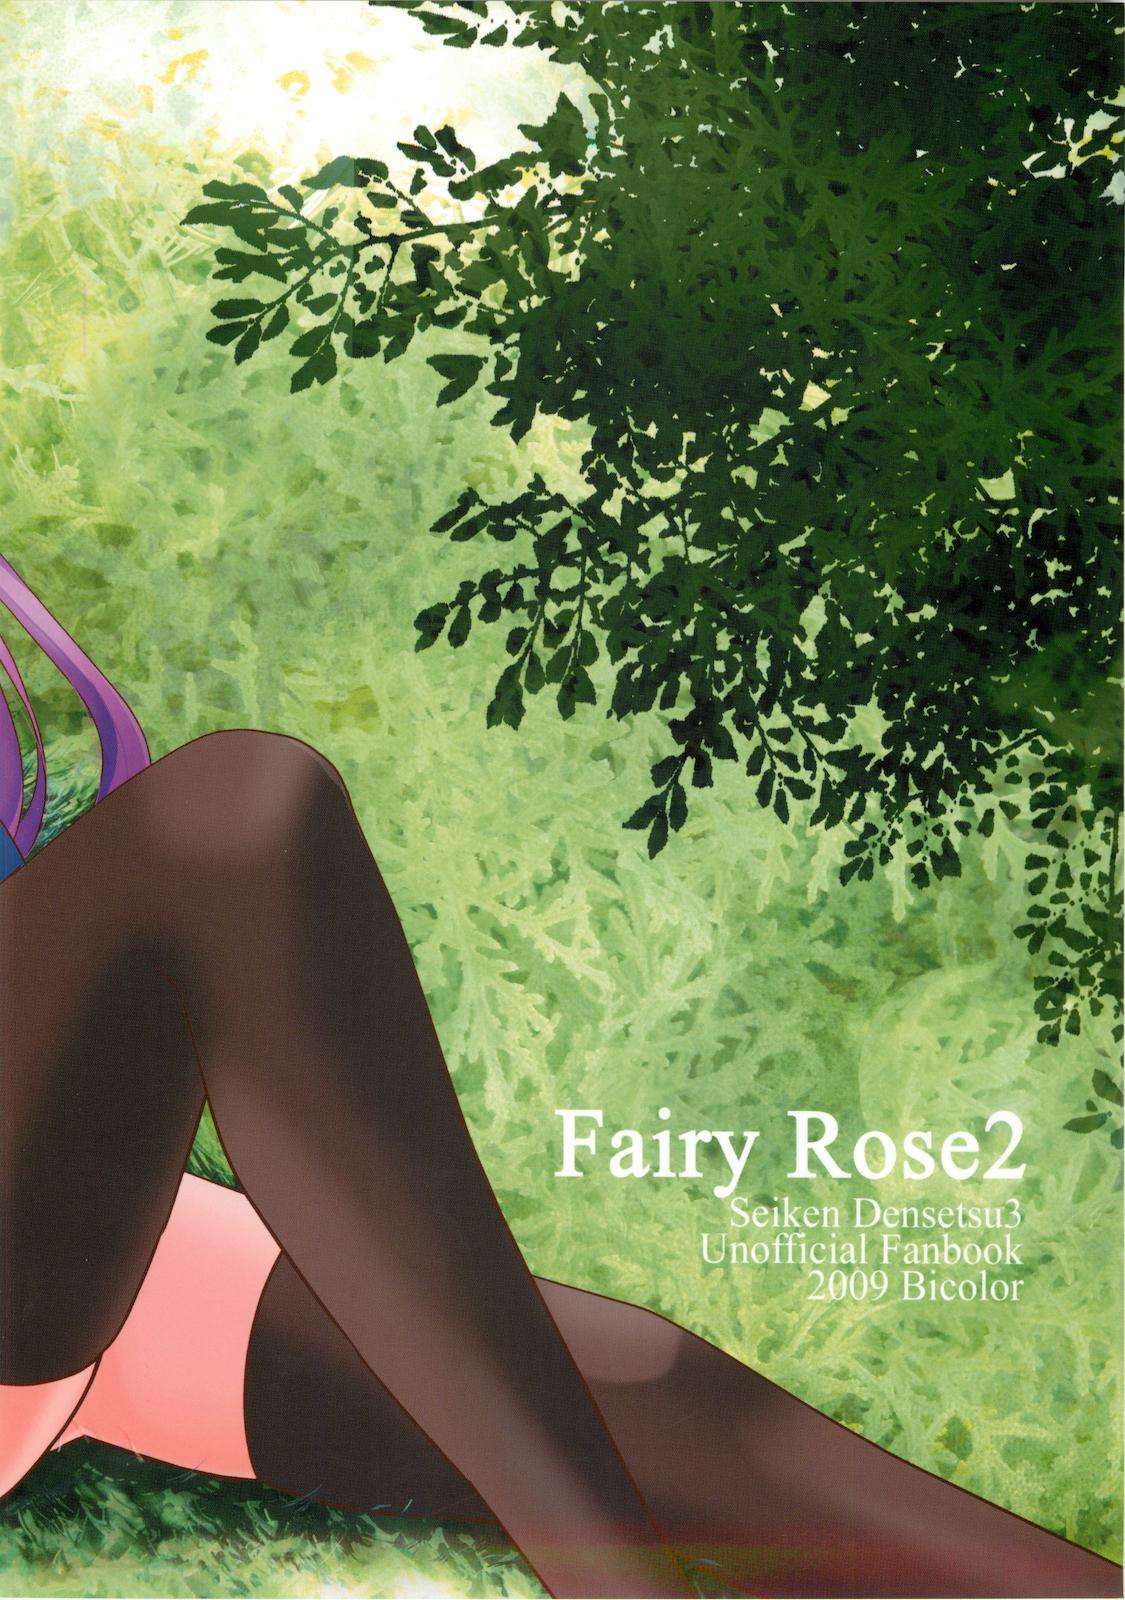 Fairy Rose 2 27